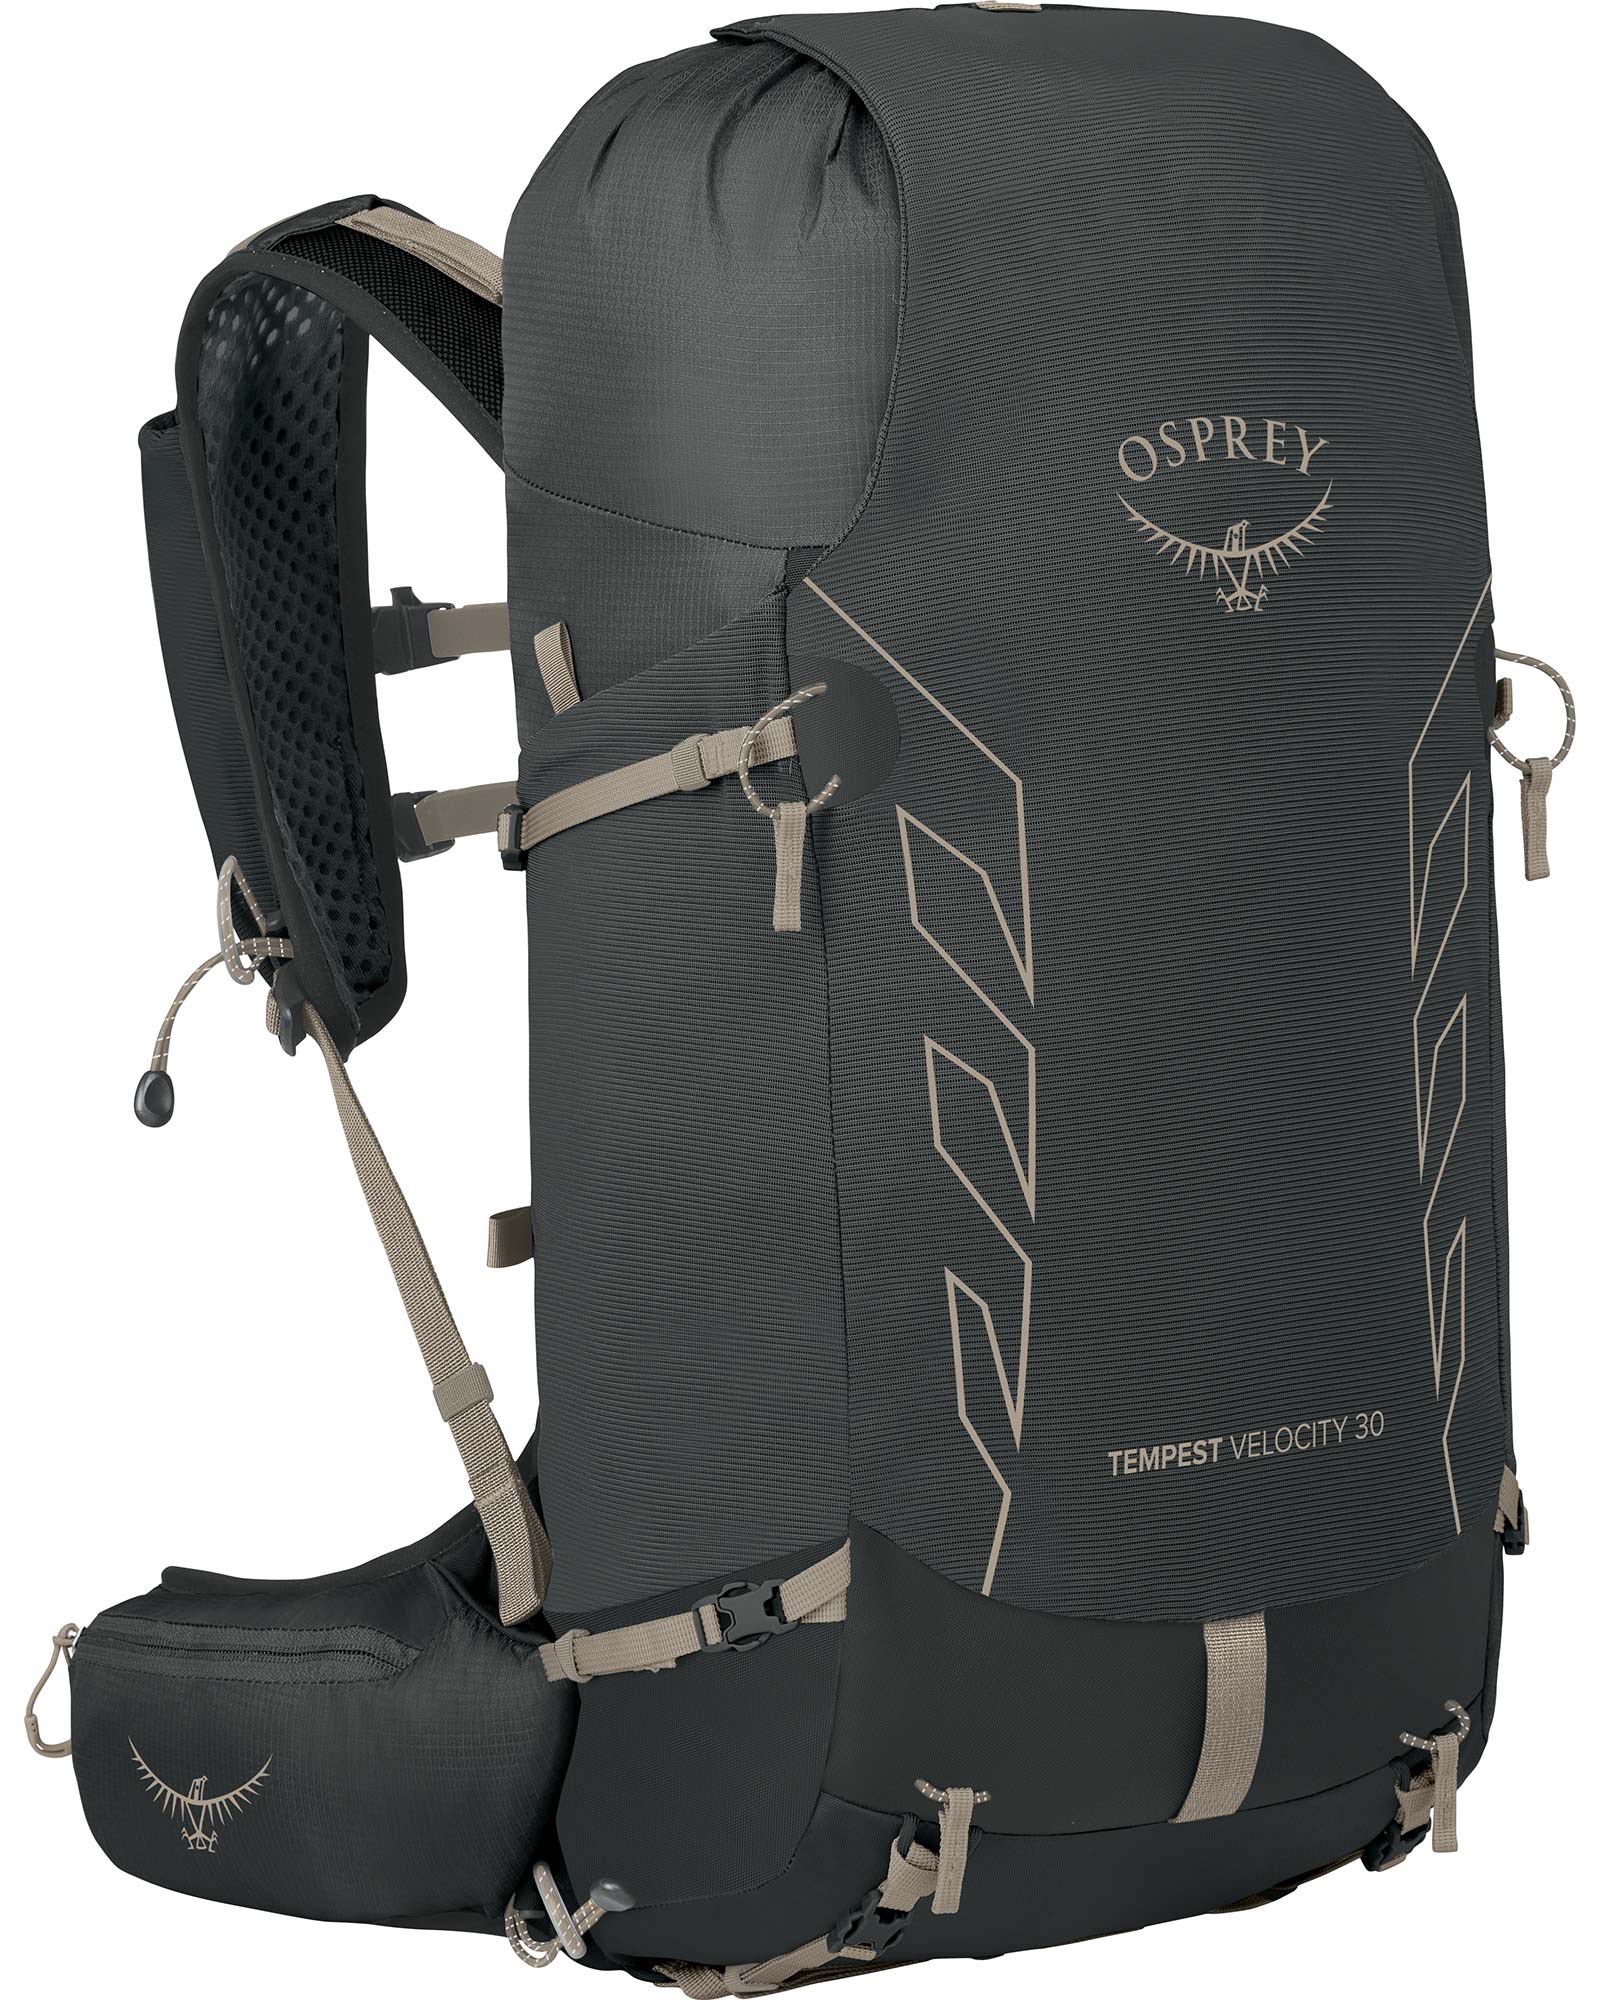 Osprey Tempest Velocity 30 Backpack